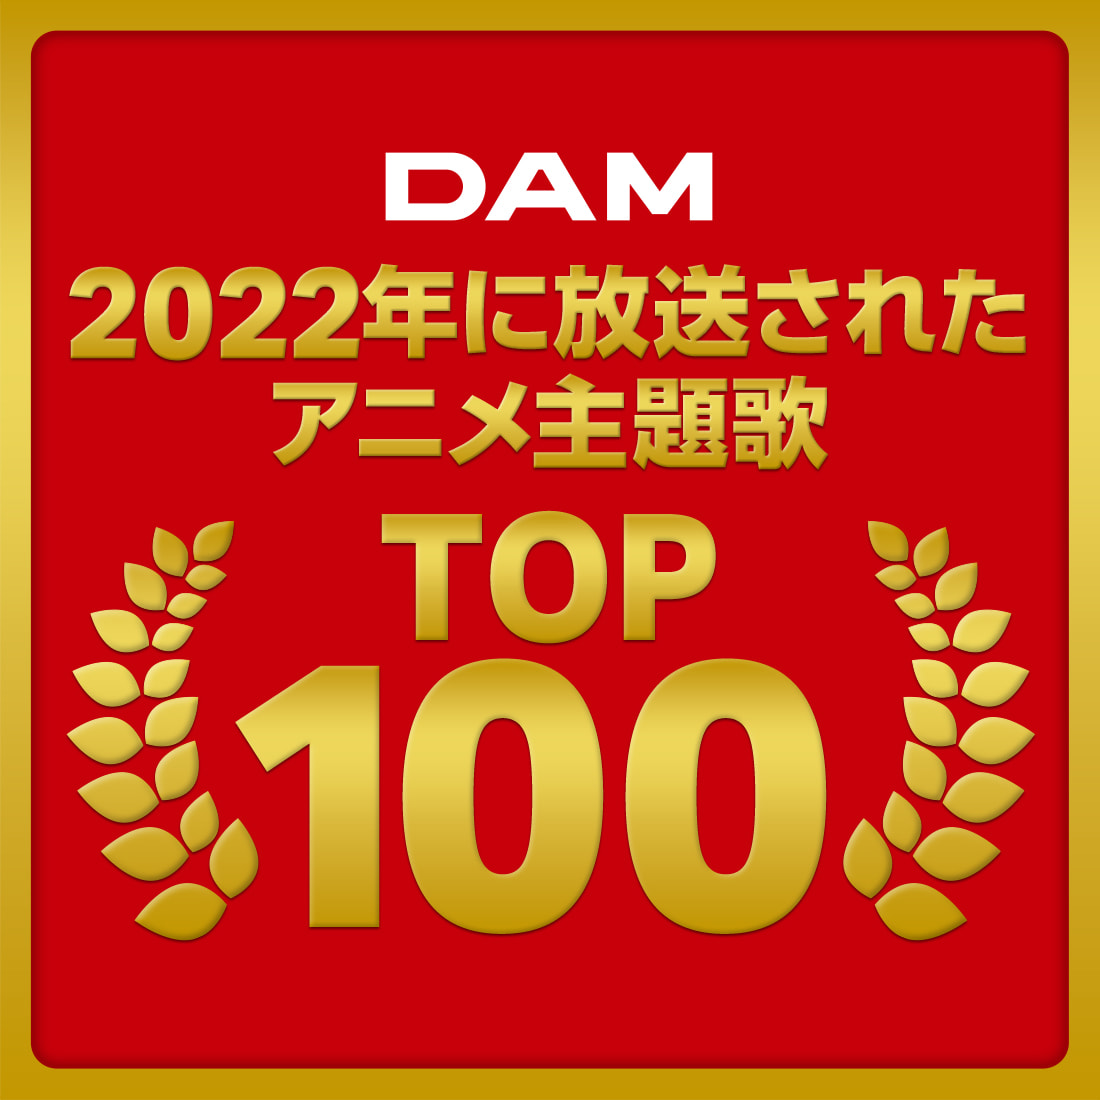 2022年に放送されたアニメ主題歌TOP100